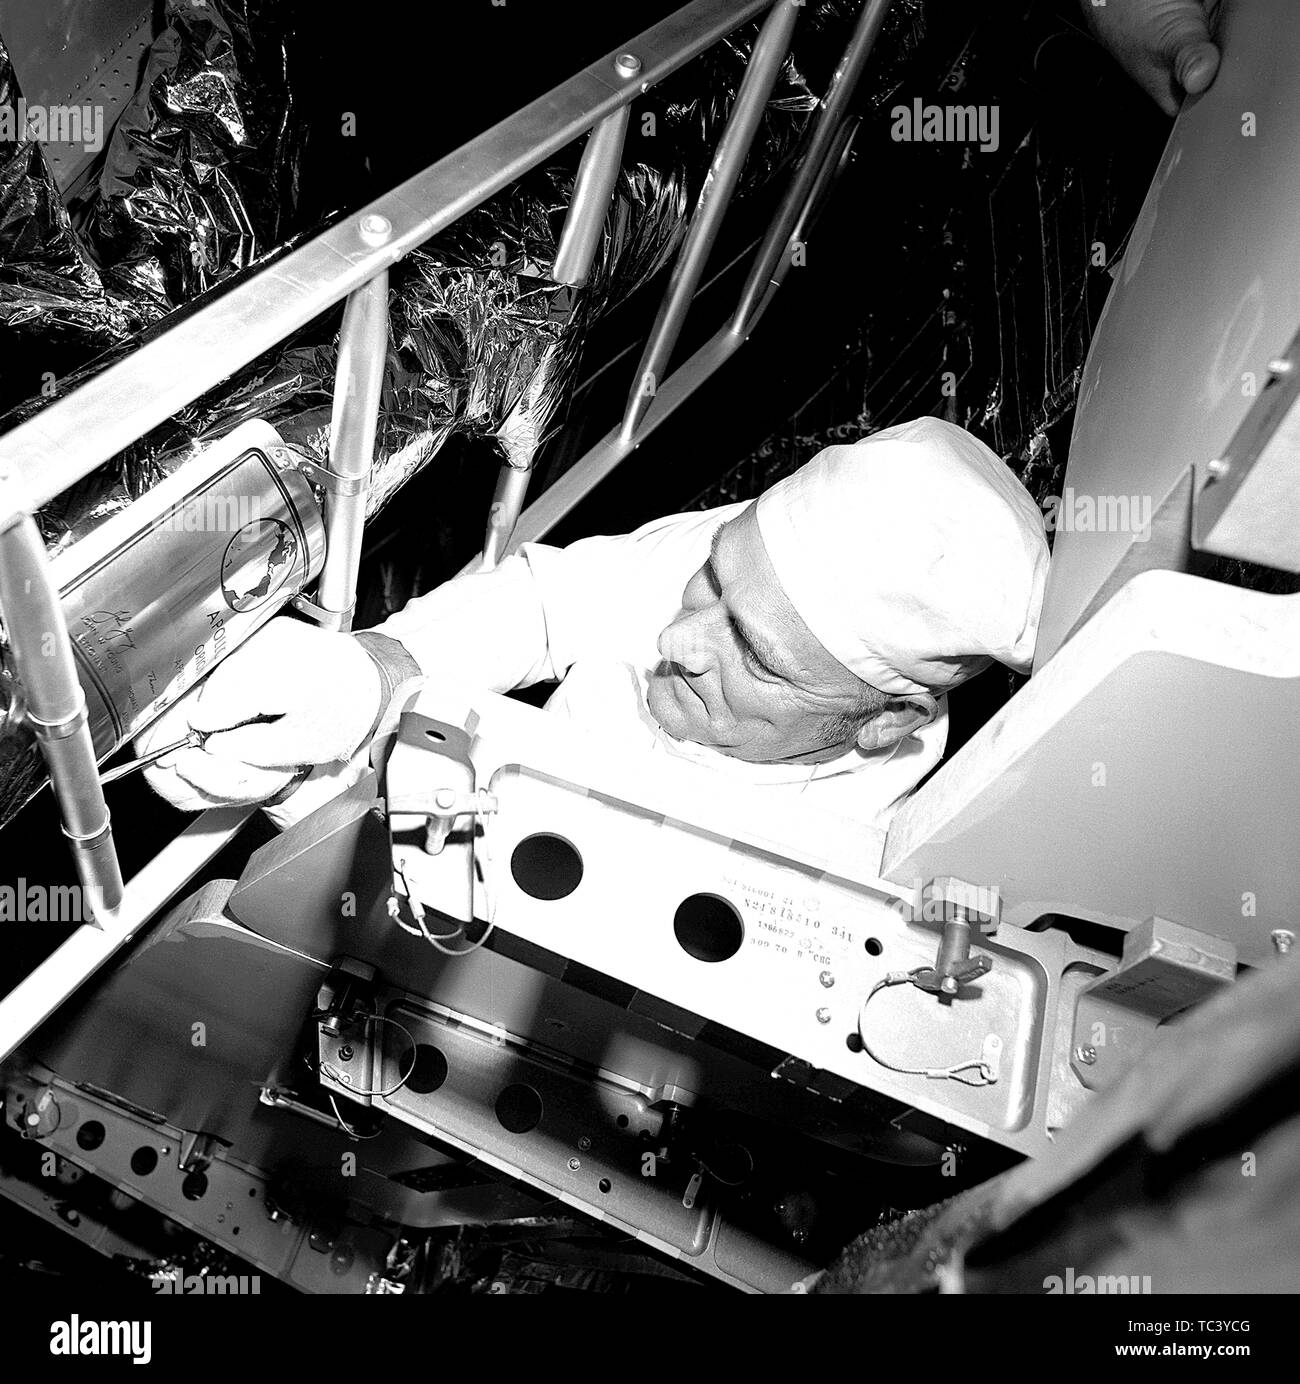 Grumman Aerospace Corporation tecnico Ken Crow il fissaggio di una placca con cuscinetto con l'equipaggio i nomi e le firme per la gamba anteriore dell'Apollo 16 Saturn V di veicoli di lancio, 10 aprile 1972. Immagine cortesia Nazionale Aeronautica e Spaziale Administration (NASA). () Foto Stock